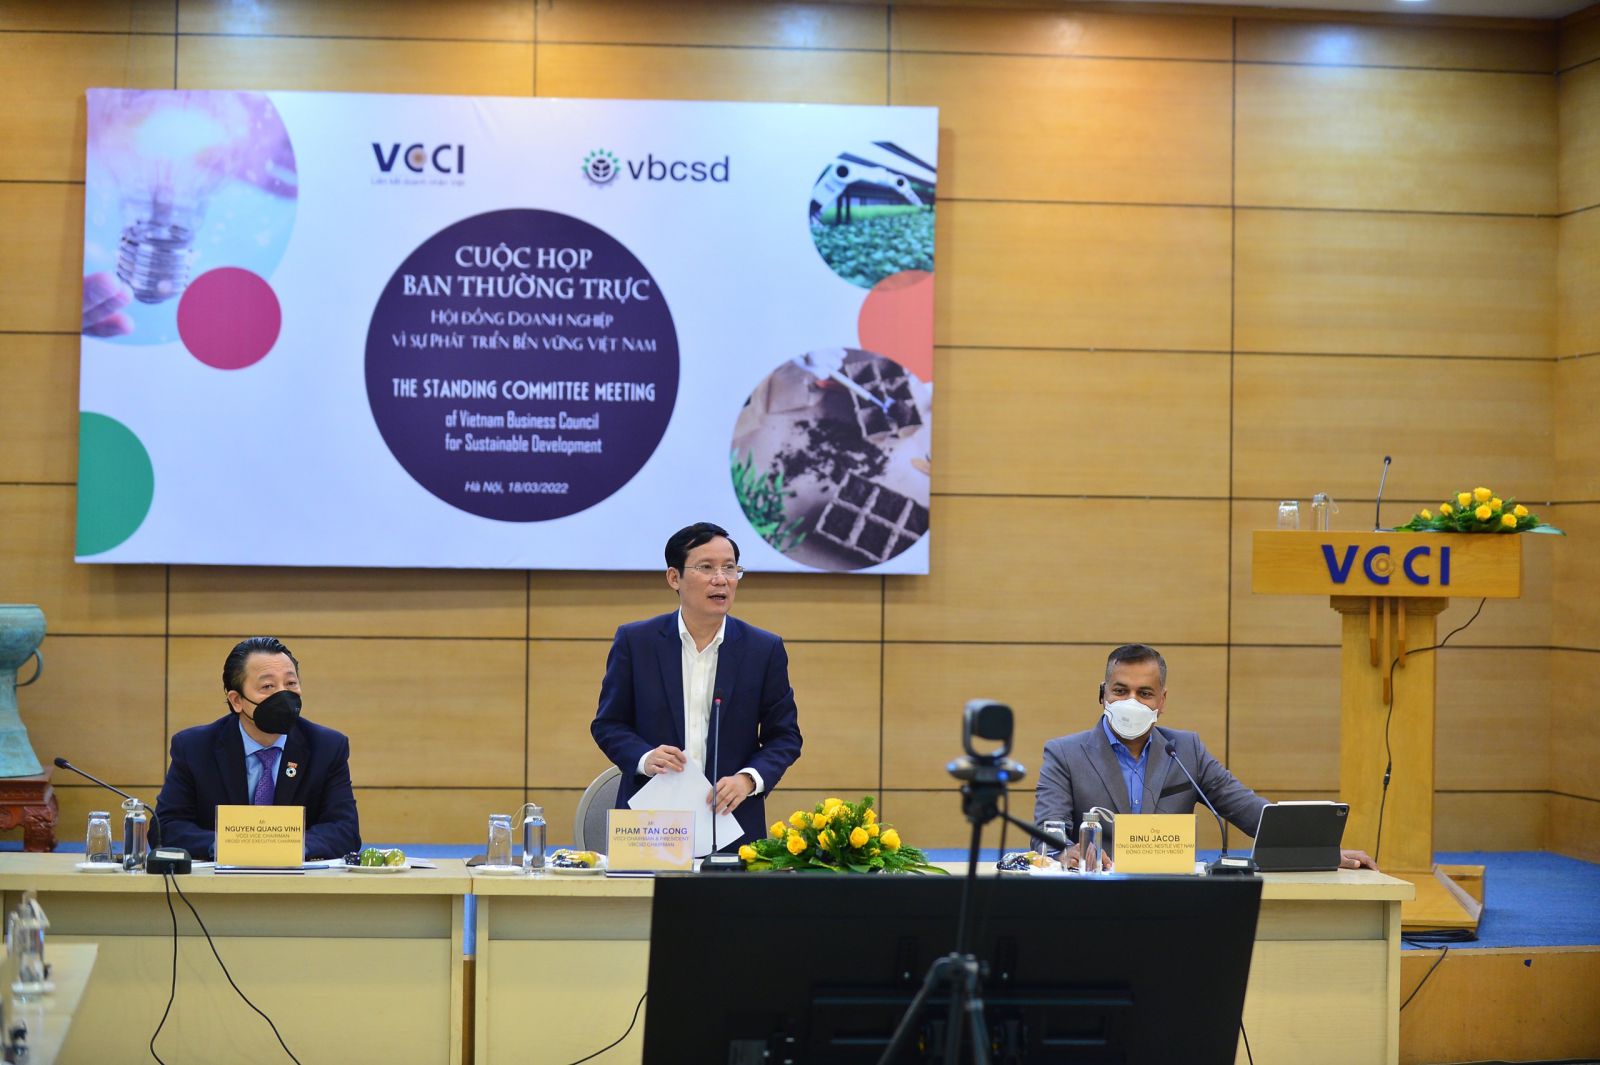 Chủ tịch VCCI Phạm Tấn Công phát biểu chỉ đạo tạitại Họp Ban thường trực Hội đồng doanh nghiệp vì sự phát triển bền vững Việt Nam(VBCSD) 2022